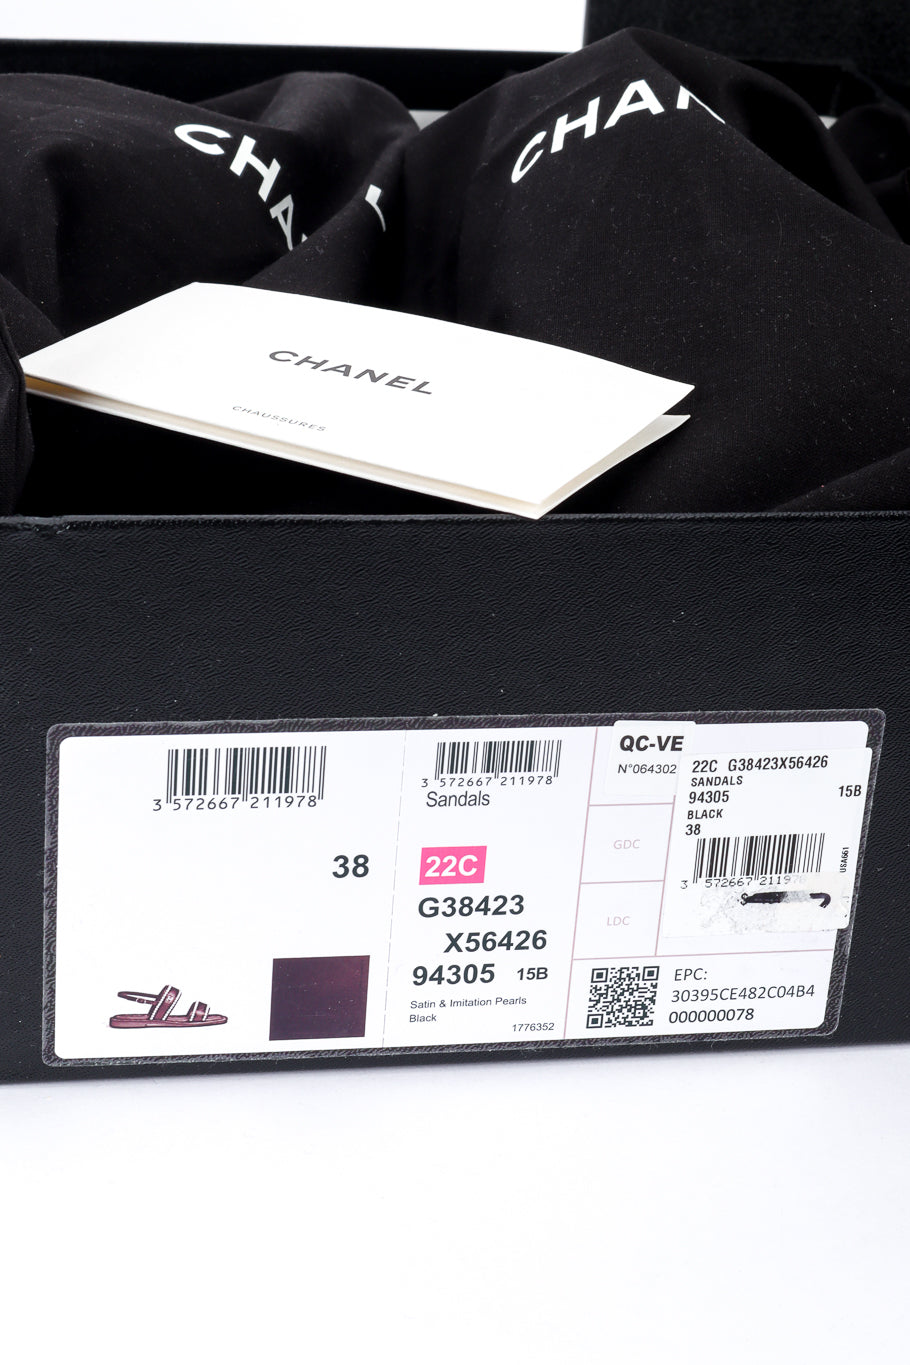 Chanel CC Satin & Pearl Sandals box details closeup @recess la